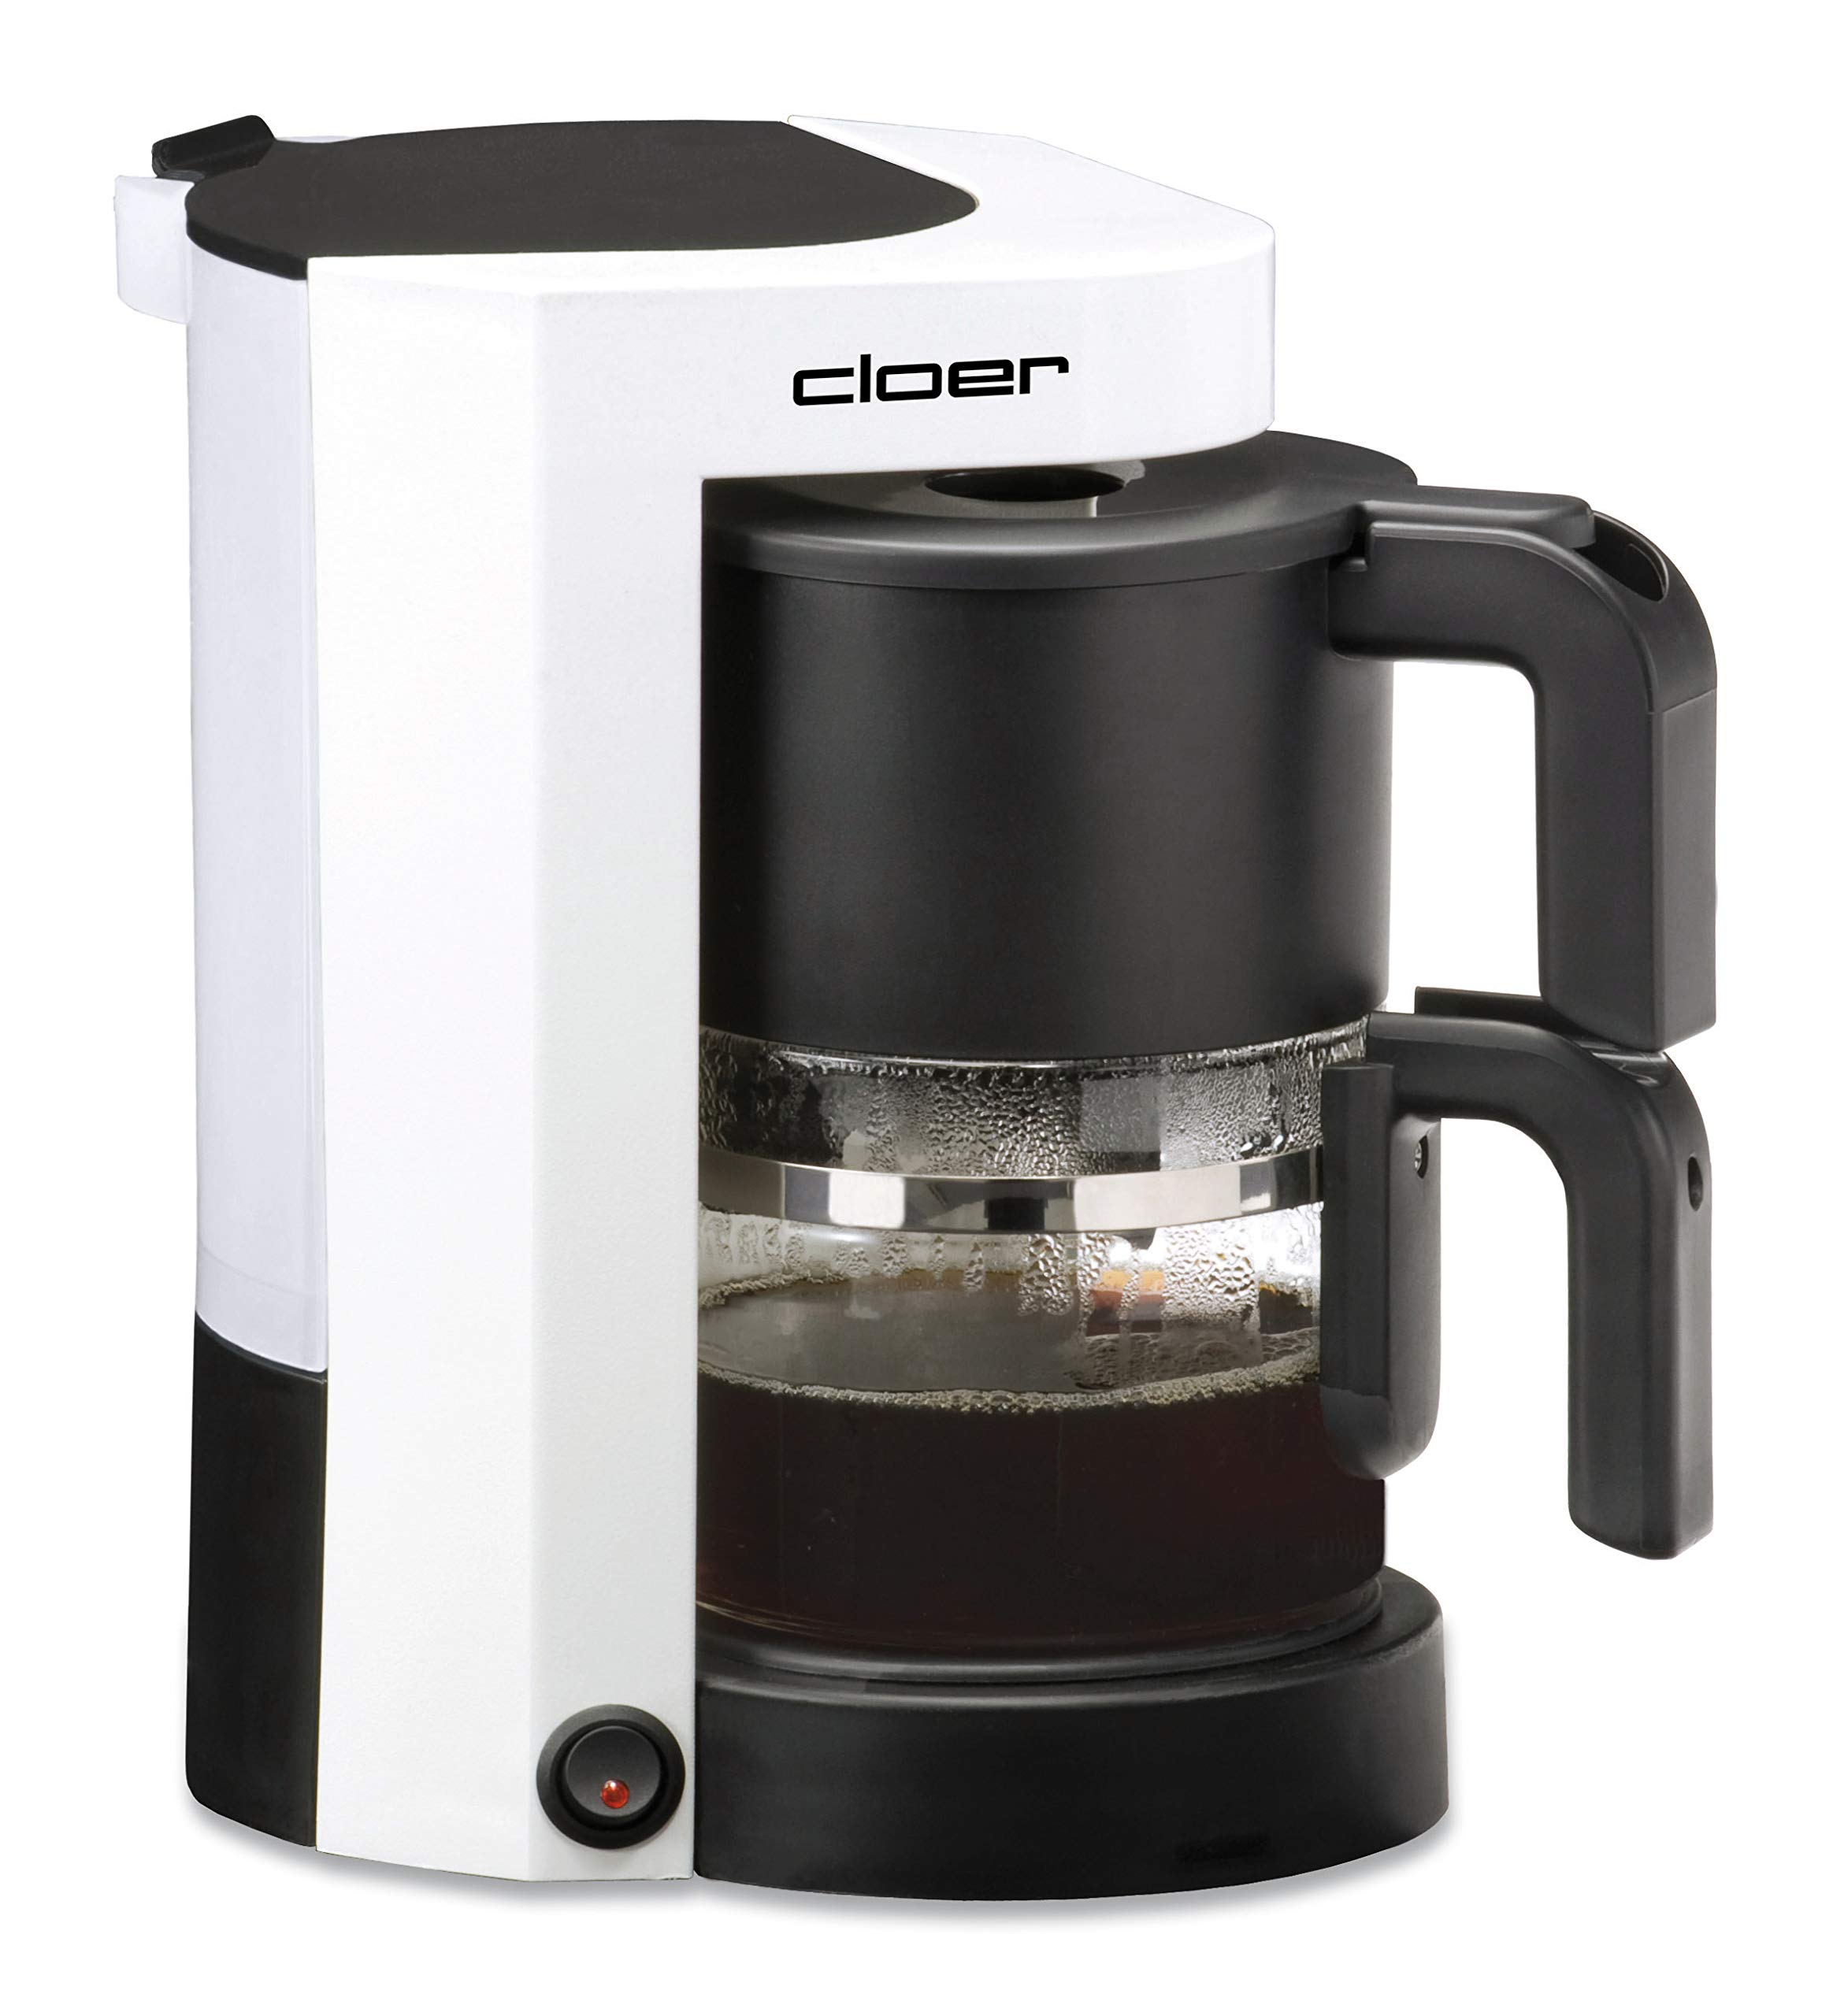 Cloer 5981 Filterkaffeemaschine mit Warmhaltefunktion, 800 W, 5 Tassen, Filtergrösse 1x2, weiß